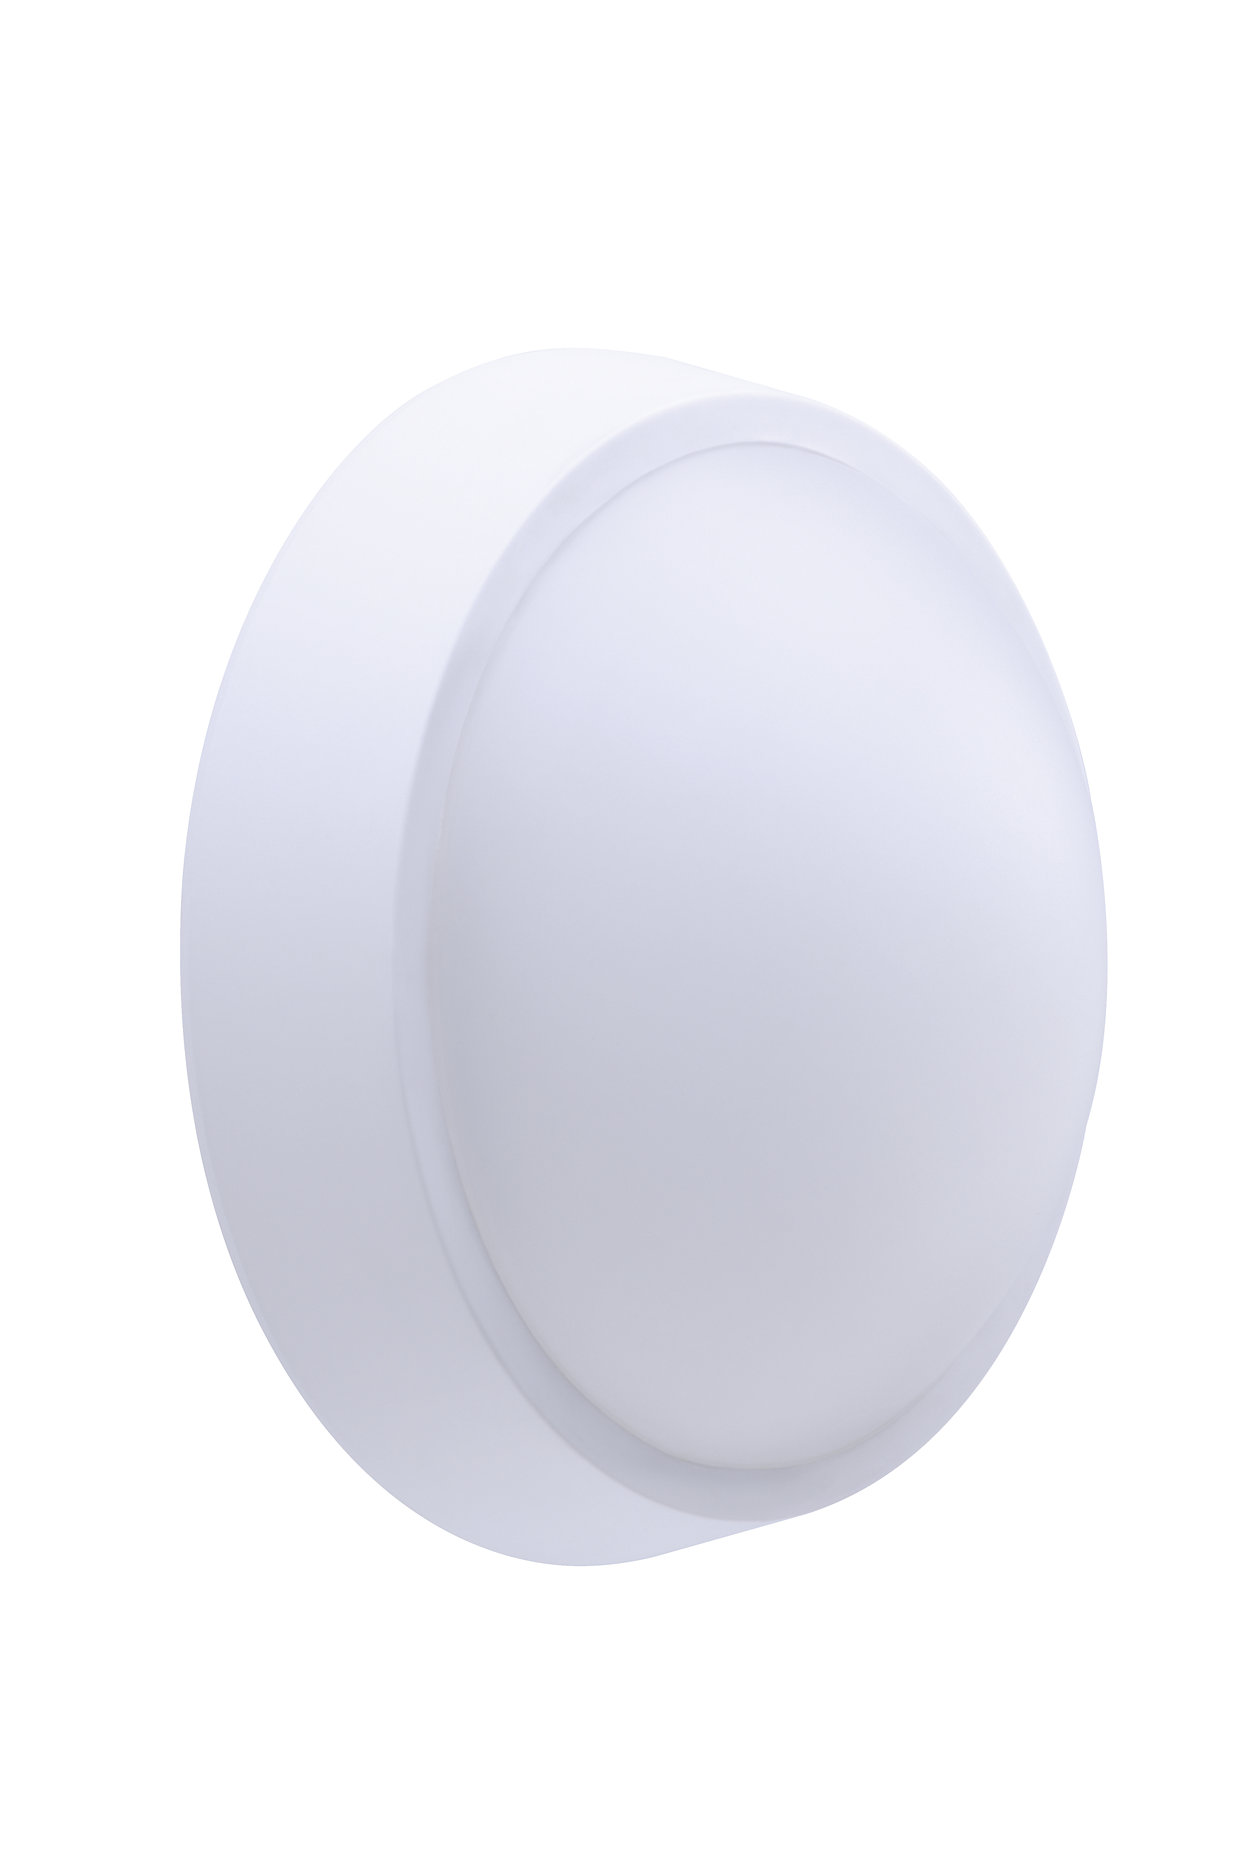 美容/健康 電気シェーバー WT045C LED20/NW PSU CFW L1665 | 911401735862 | Philips lighting